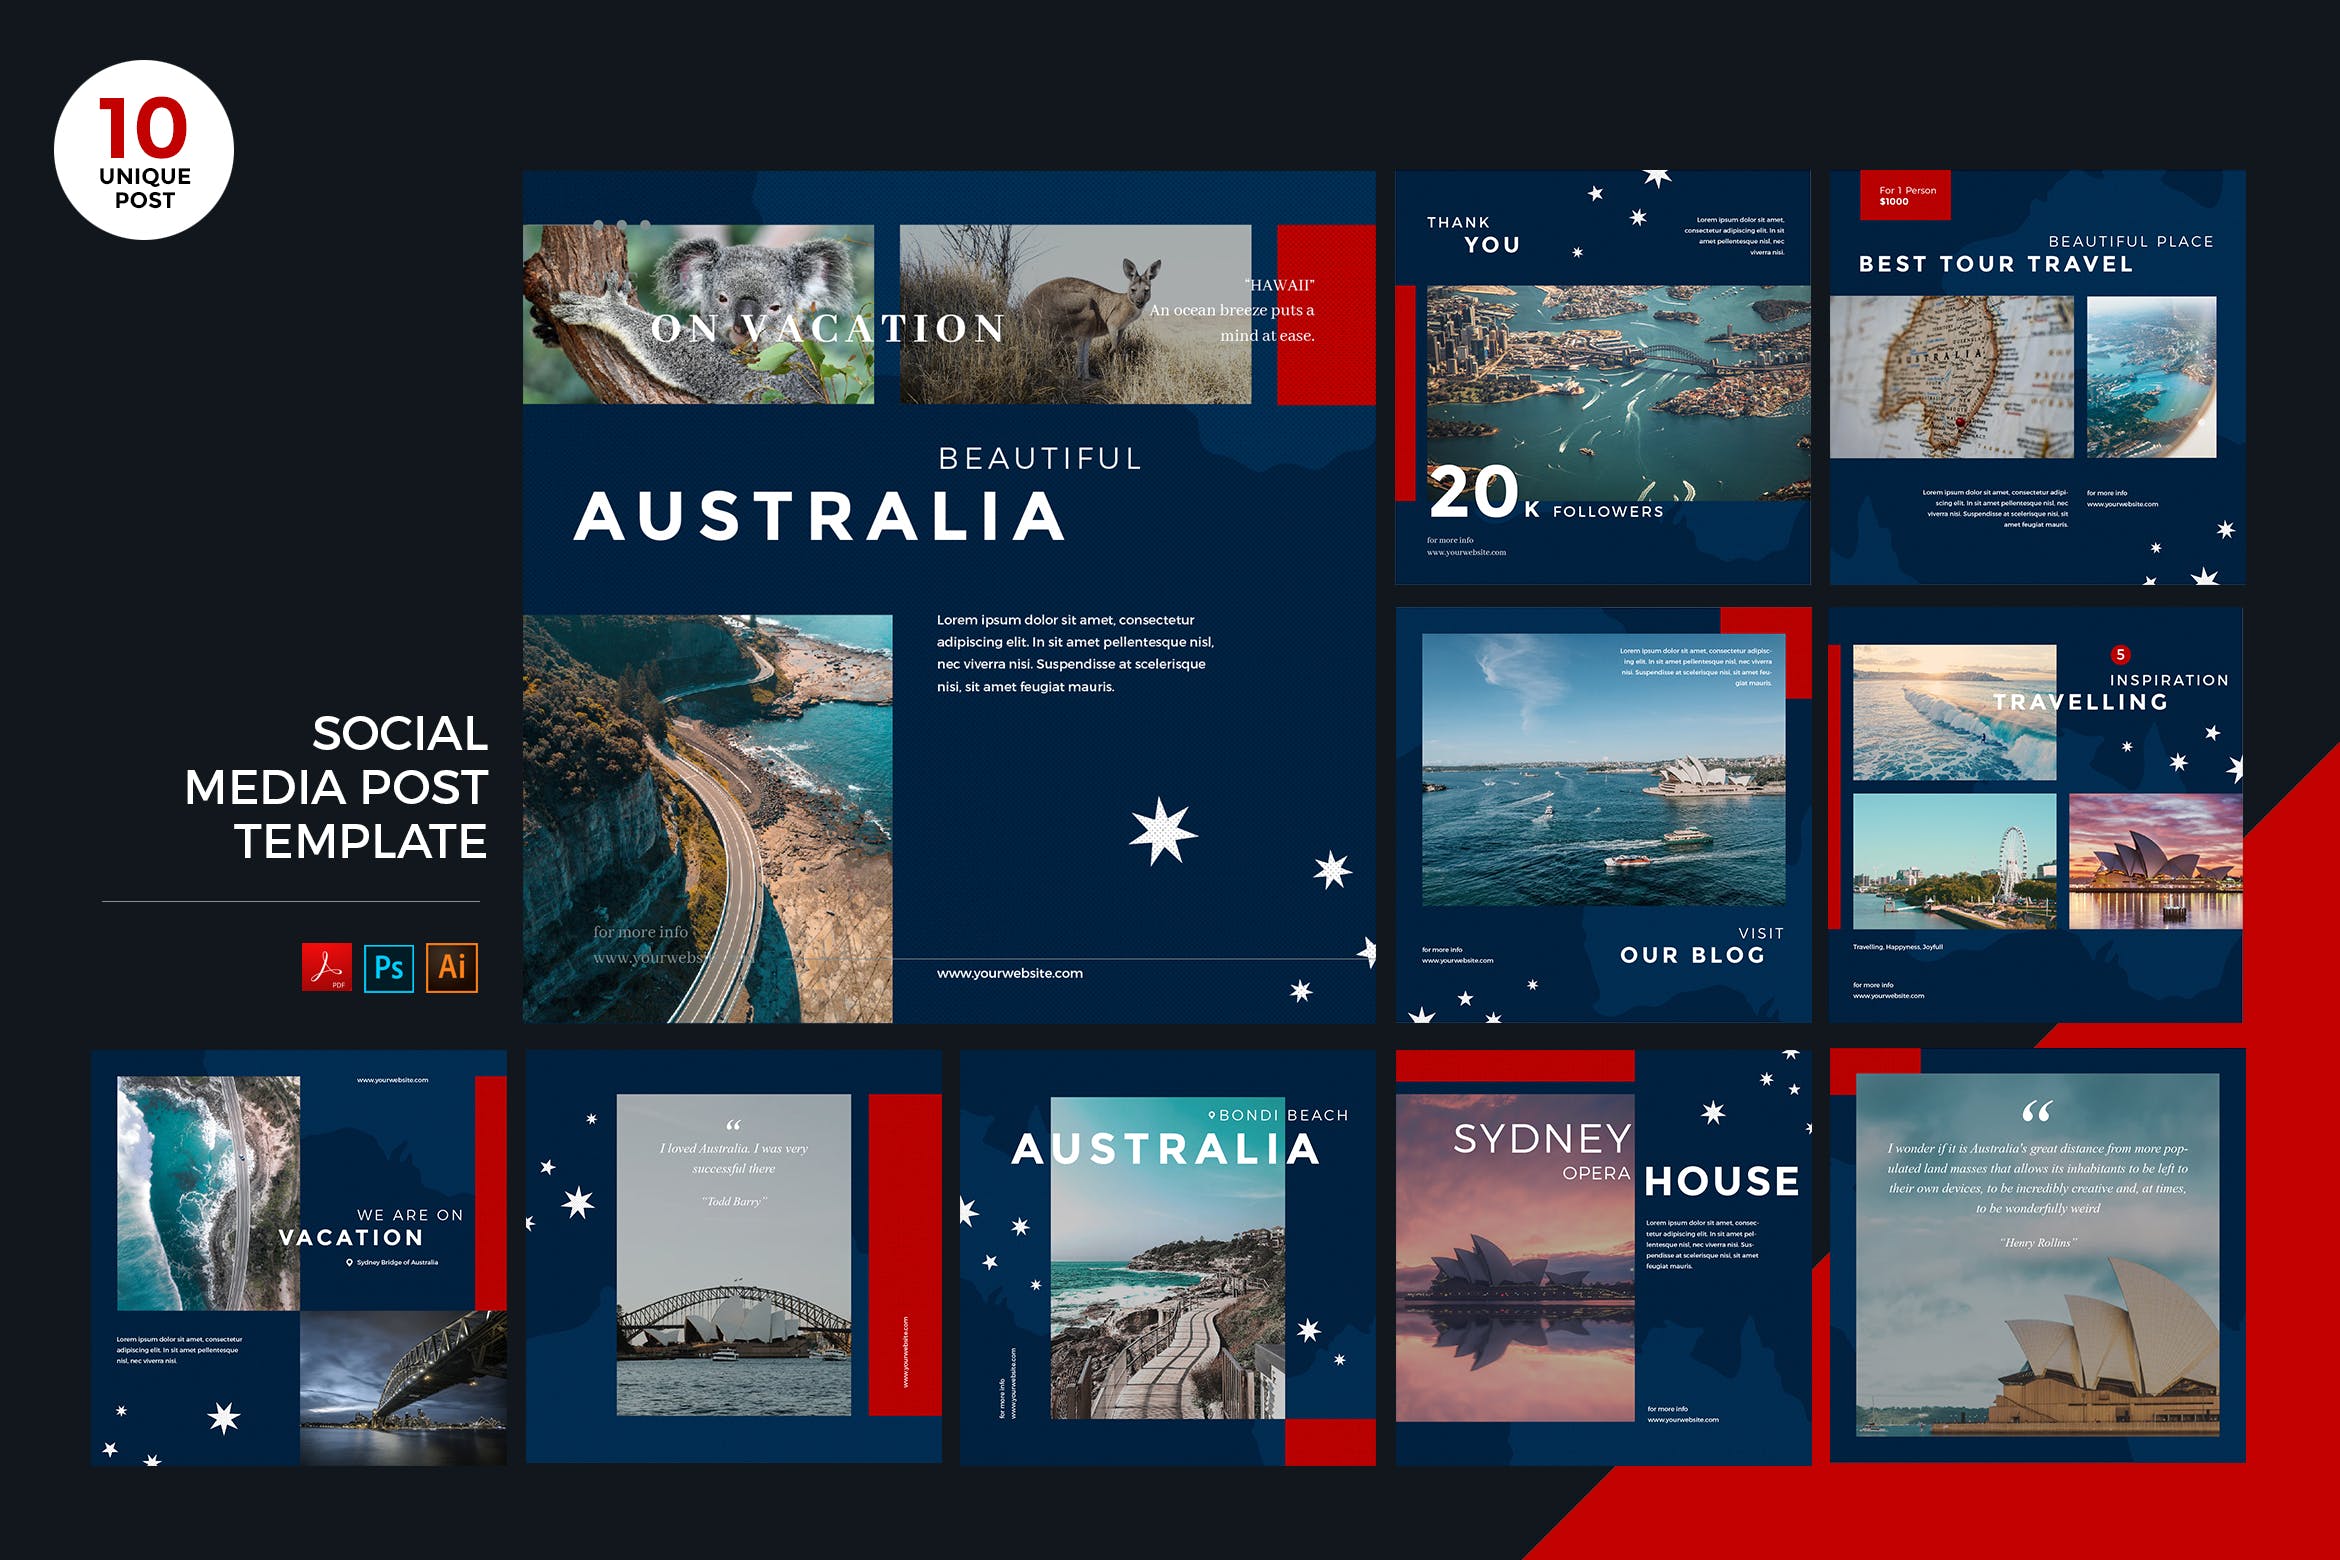 澳大利亚旅游推广社交媒体PSD&AI模板非凡图库精选 Travel To Australia Social Media Kit PSD & AI插图